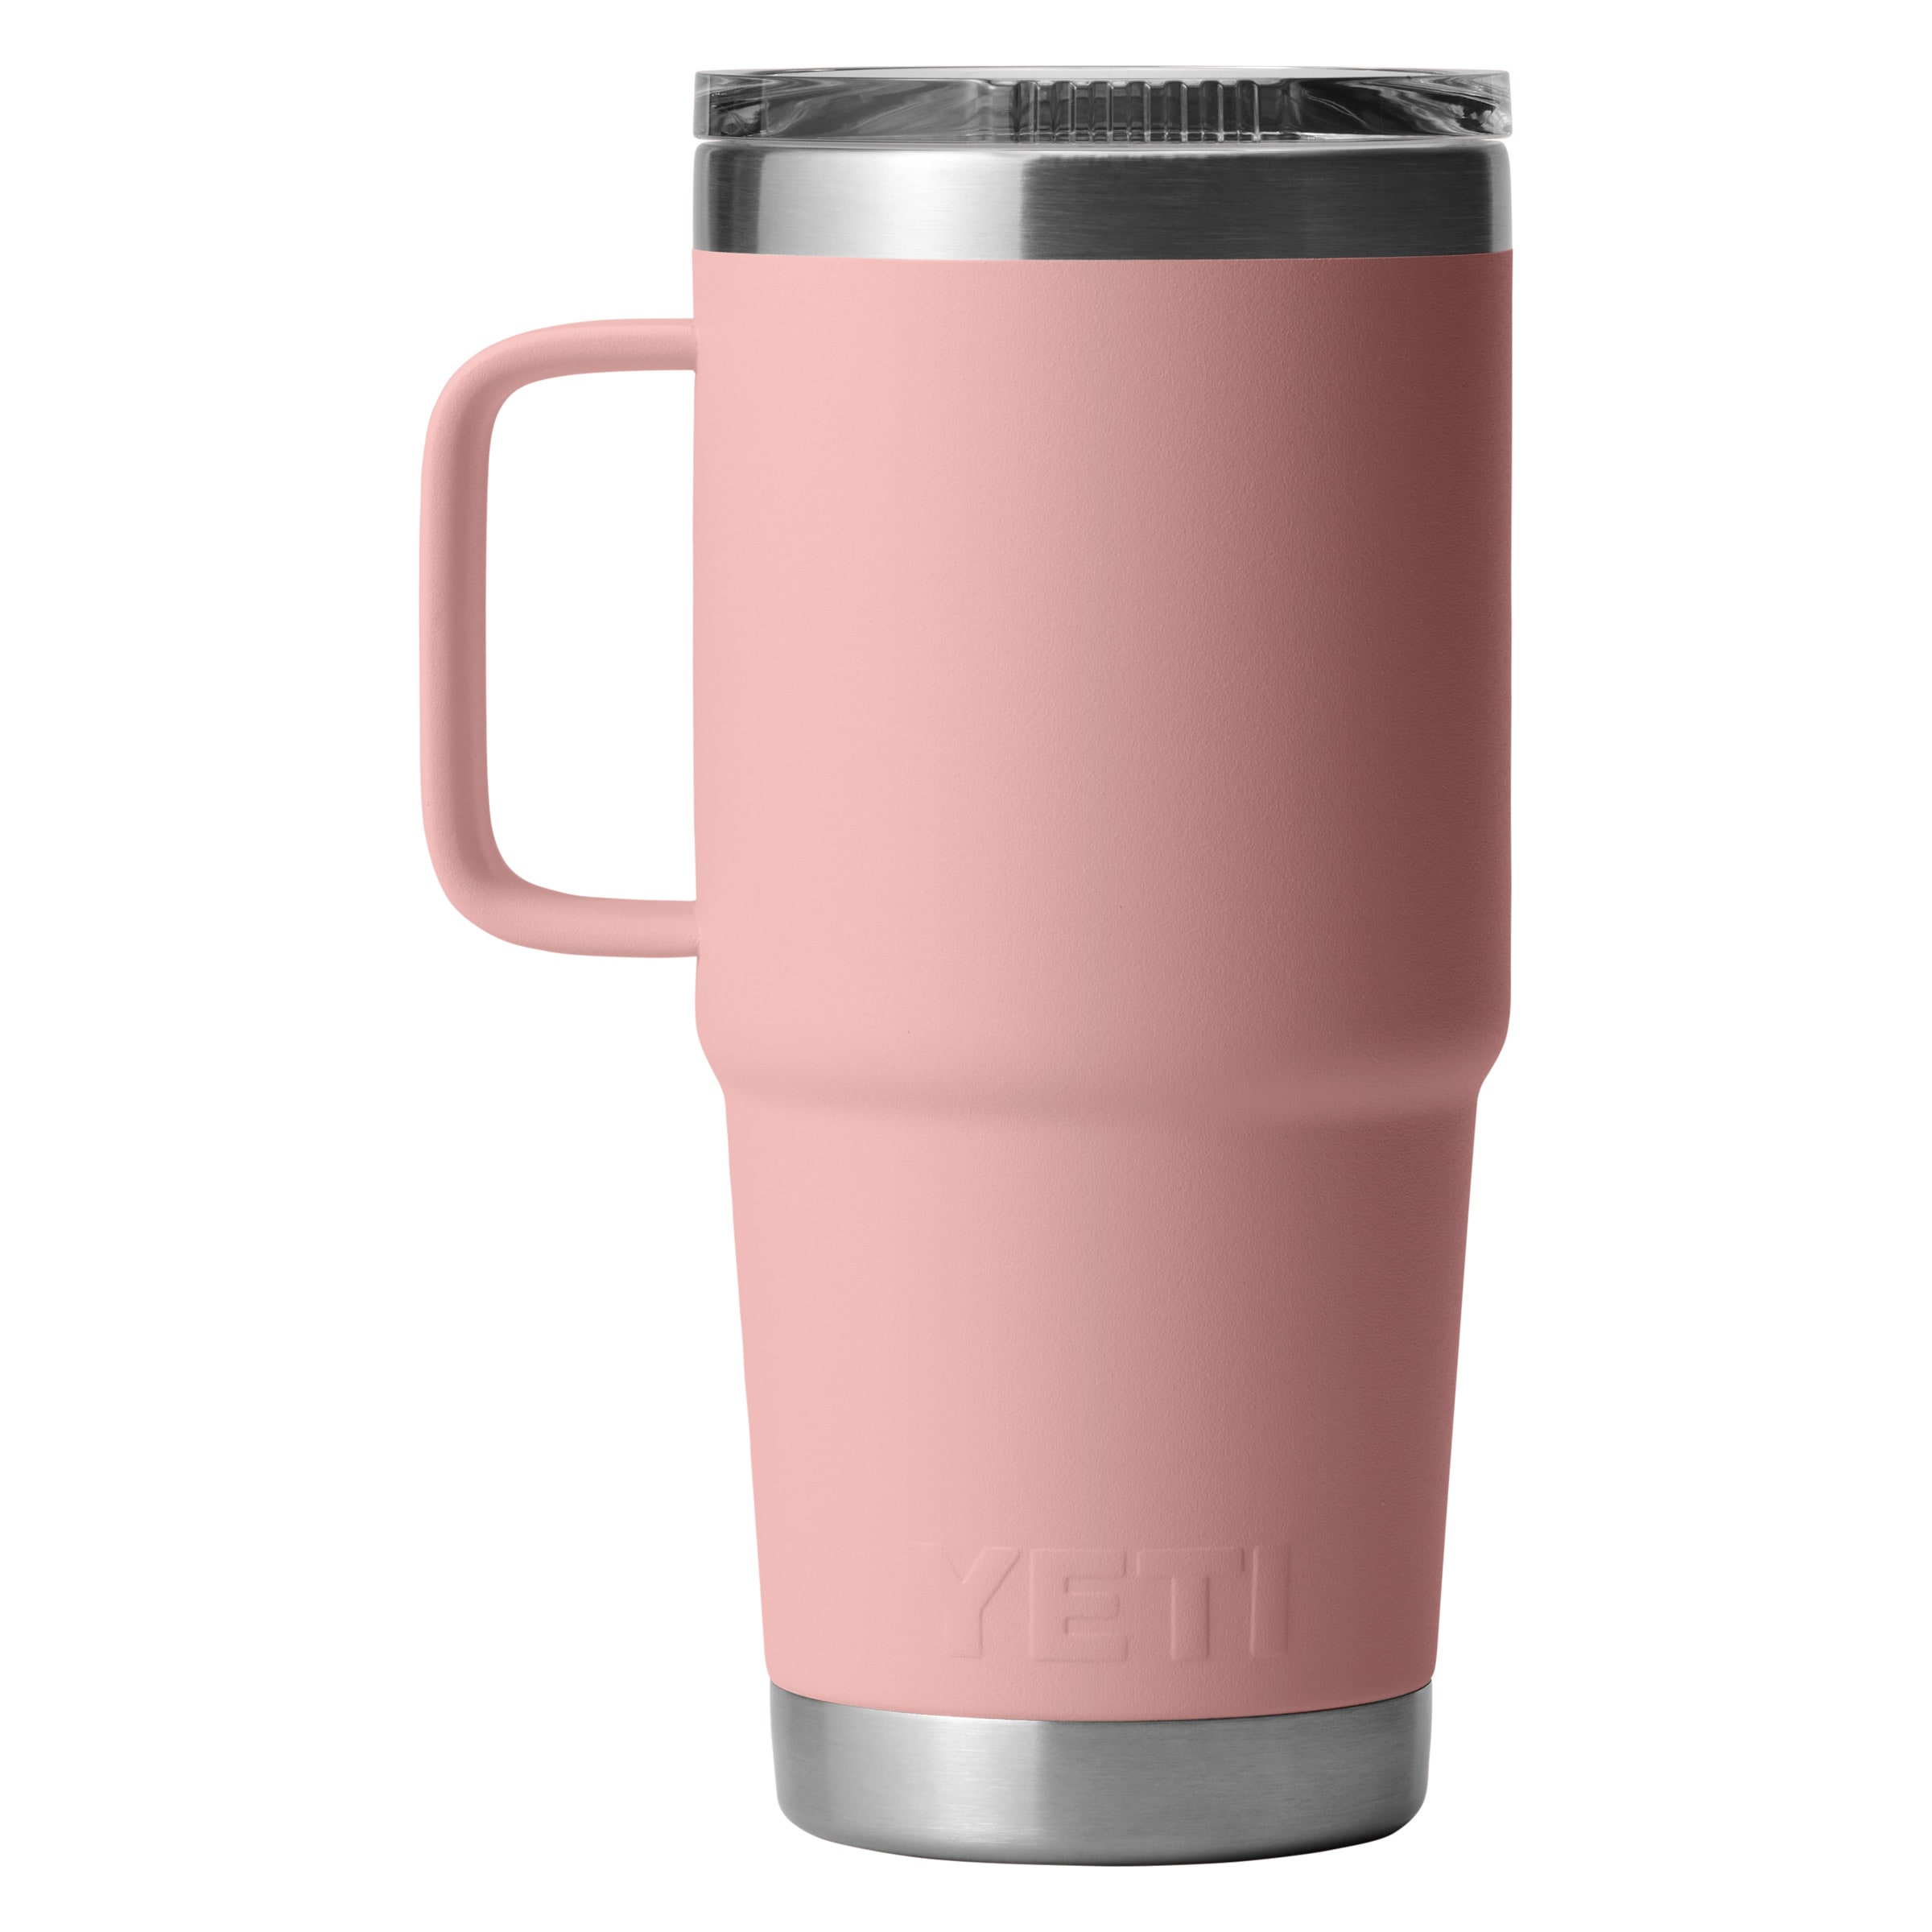 Yeti Rambler 20 oz Travel Mug with StrongHold Lid